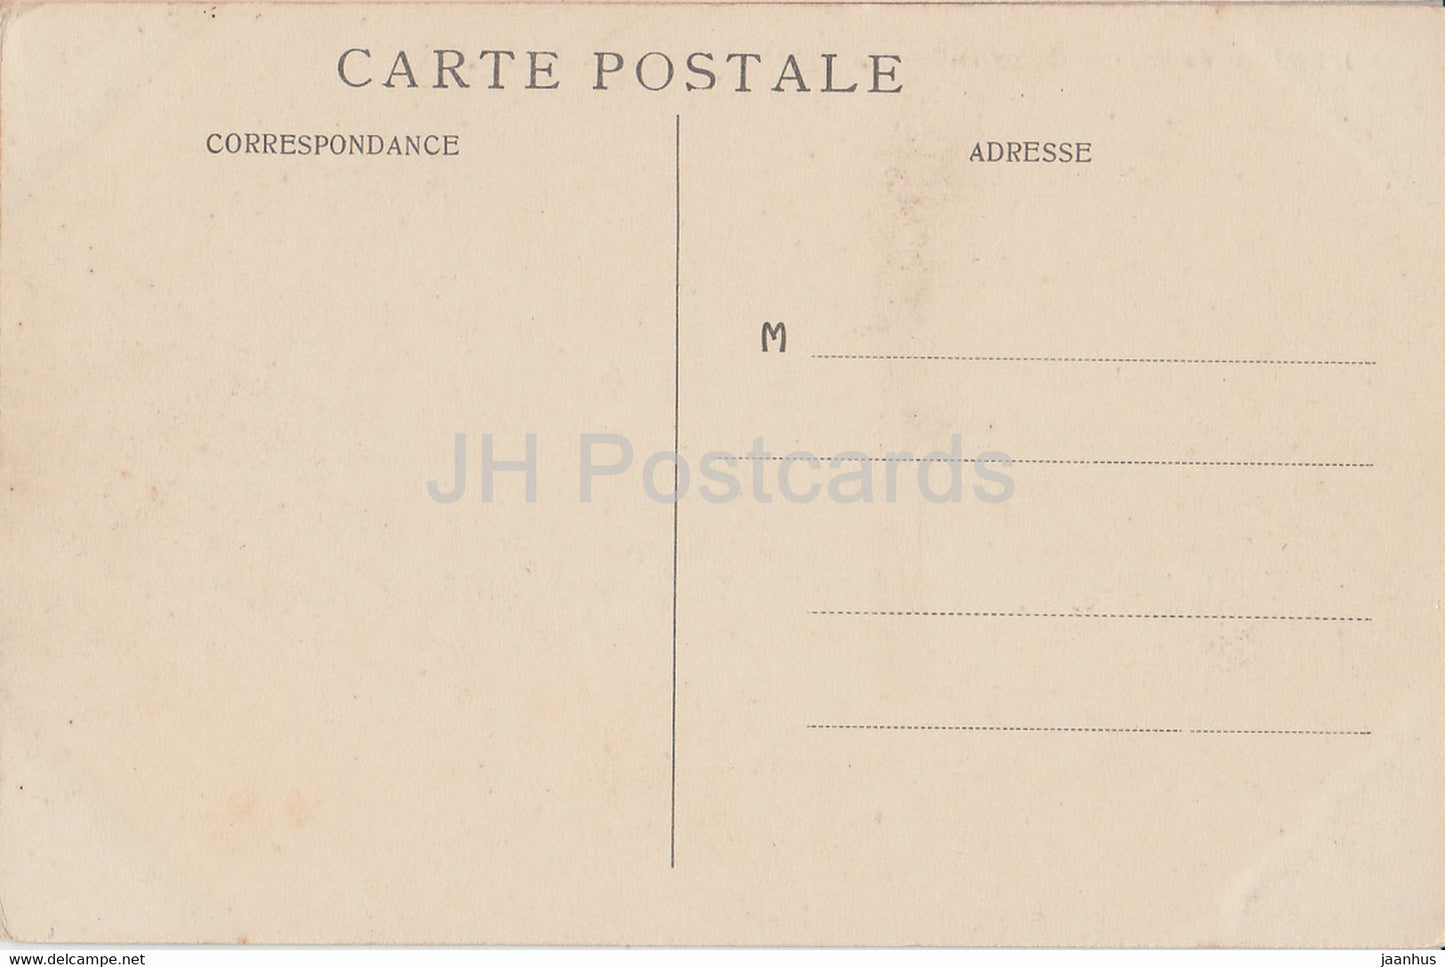 Environs de Laon - Coucy le Chateau - Vue Generale du Chateau - Schloss - 1 - alte Postkarte - Frankreich - gebraucht